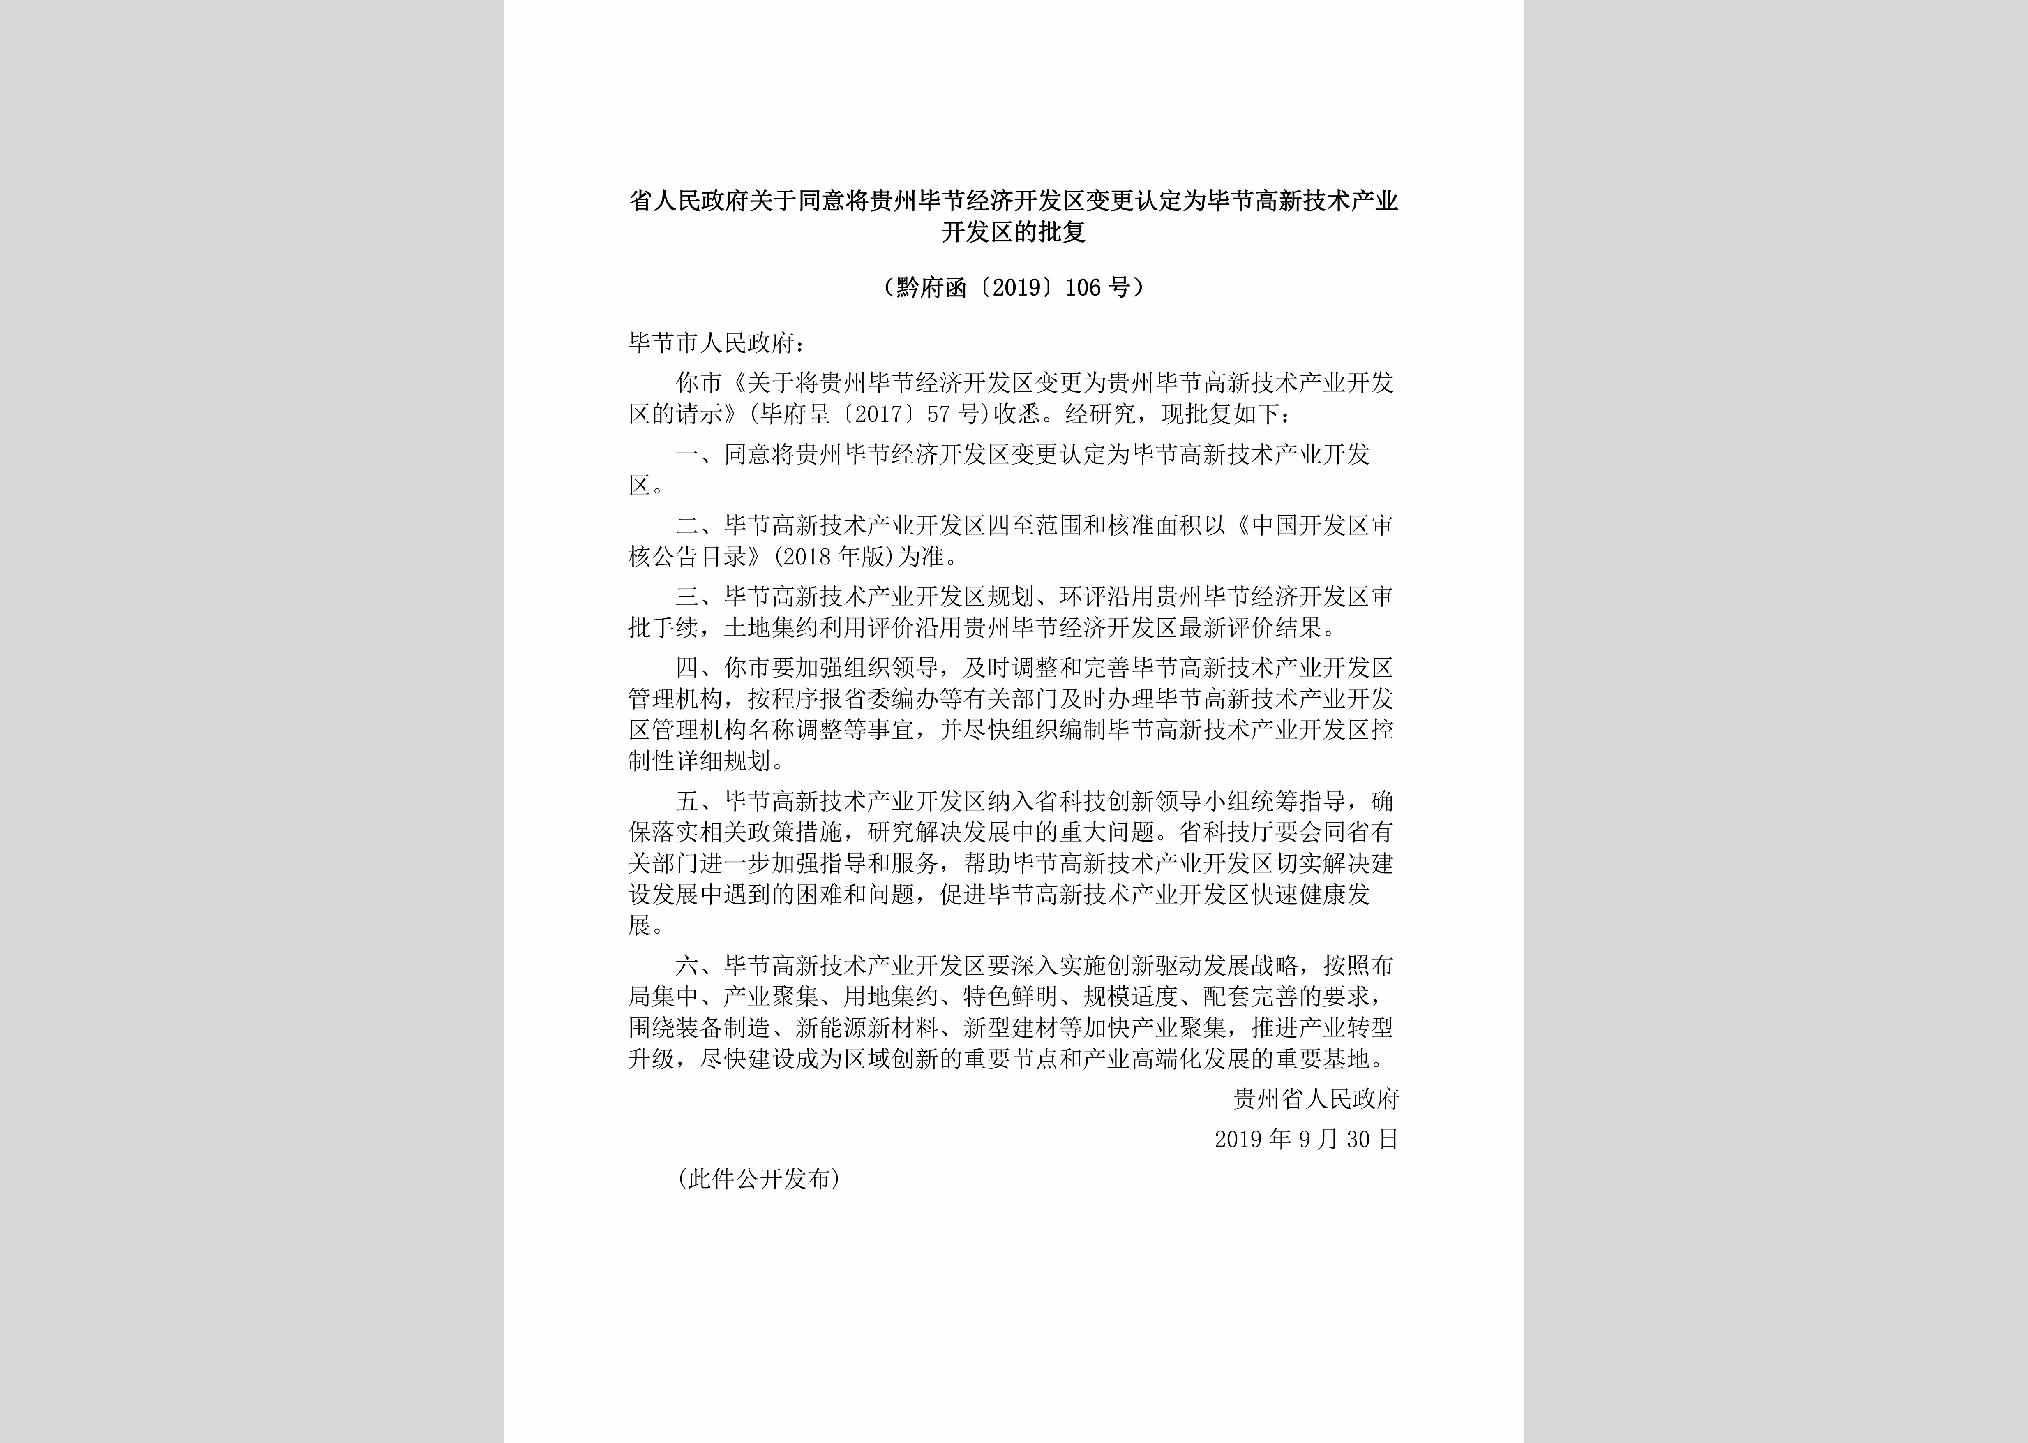 黔府函[2019]106号：省人民政府关于同意将贵州毕节经济开发区变更认定为毕节高新技术产业开发区的批复